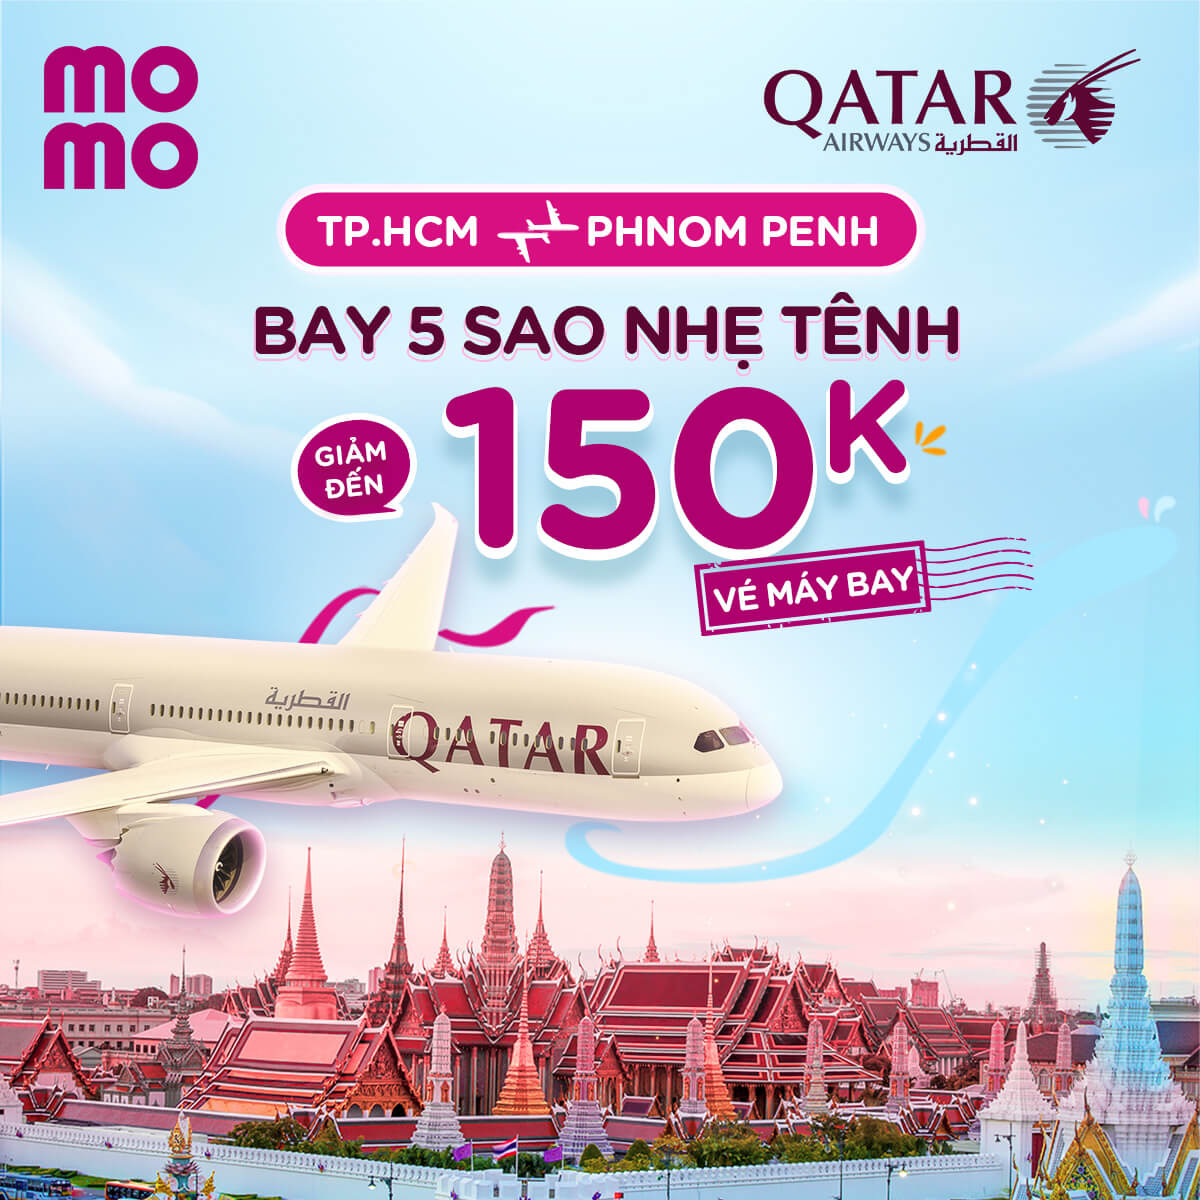 Deal giảm 150.000Đ chặng Sài Gòn - Phnom Penh, bay 5 sao nhẹ tênh cùng MoMo Travel